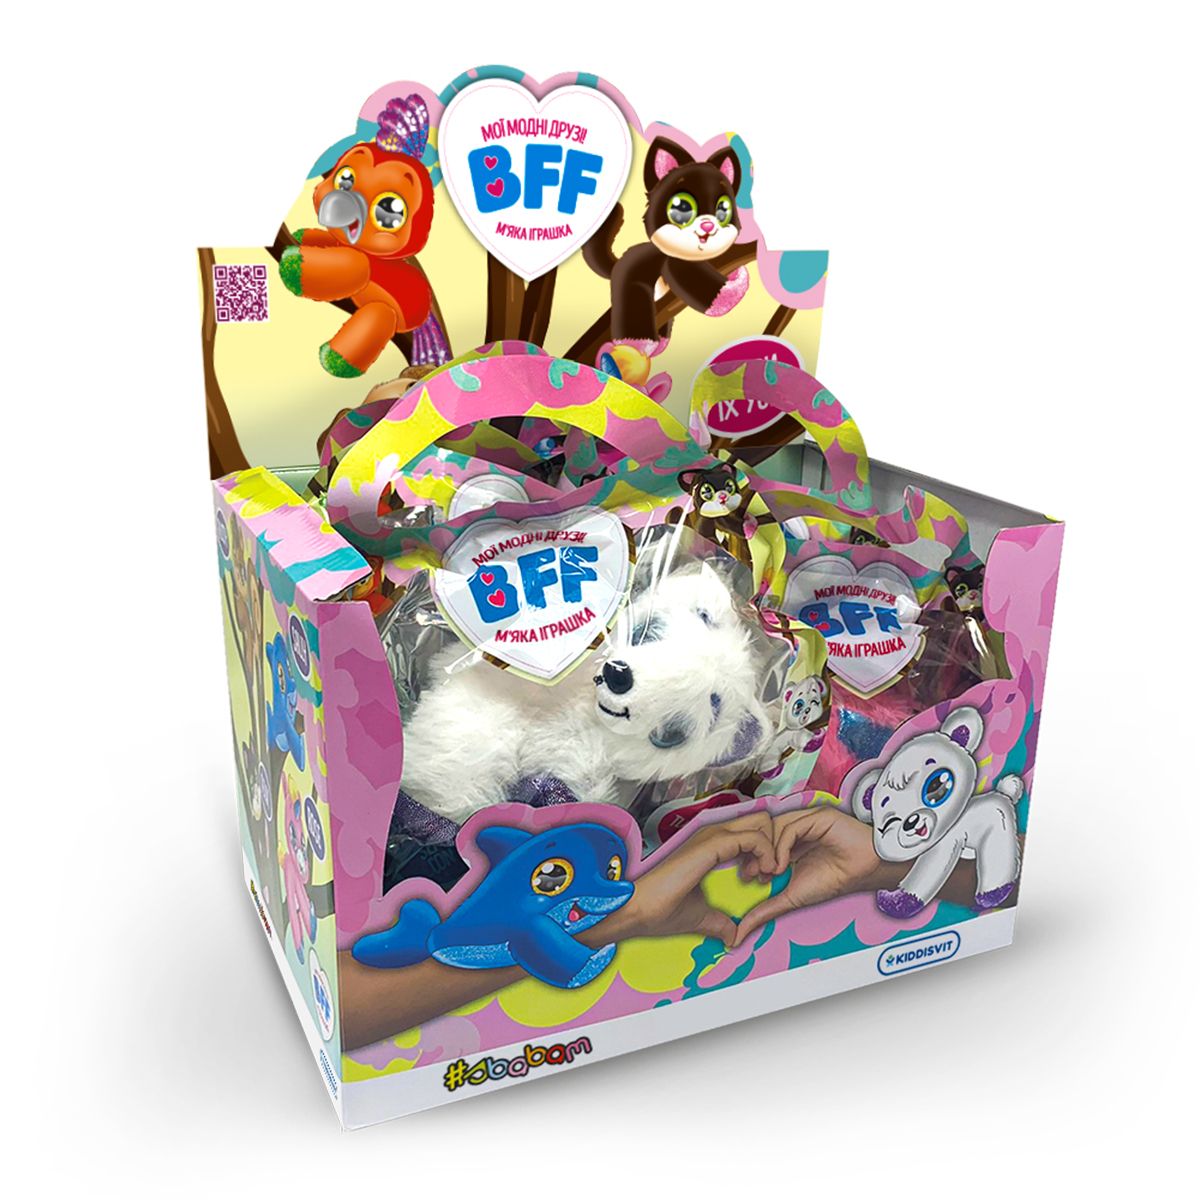 Мягкая коллекционная игрушка "Мои модные друзья S4 - Феликс"